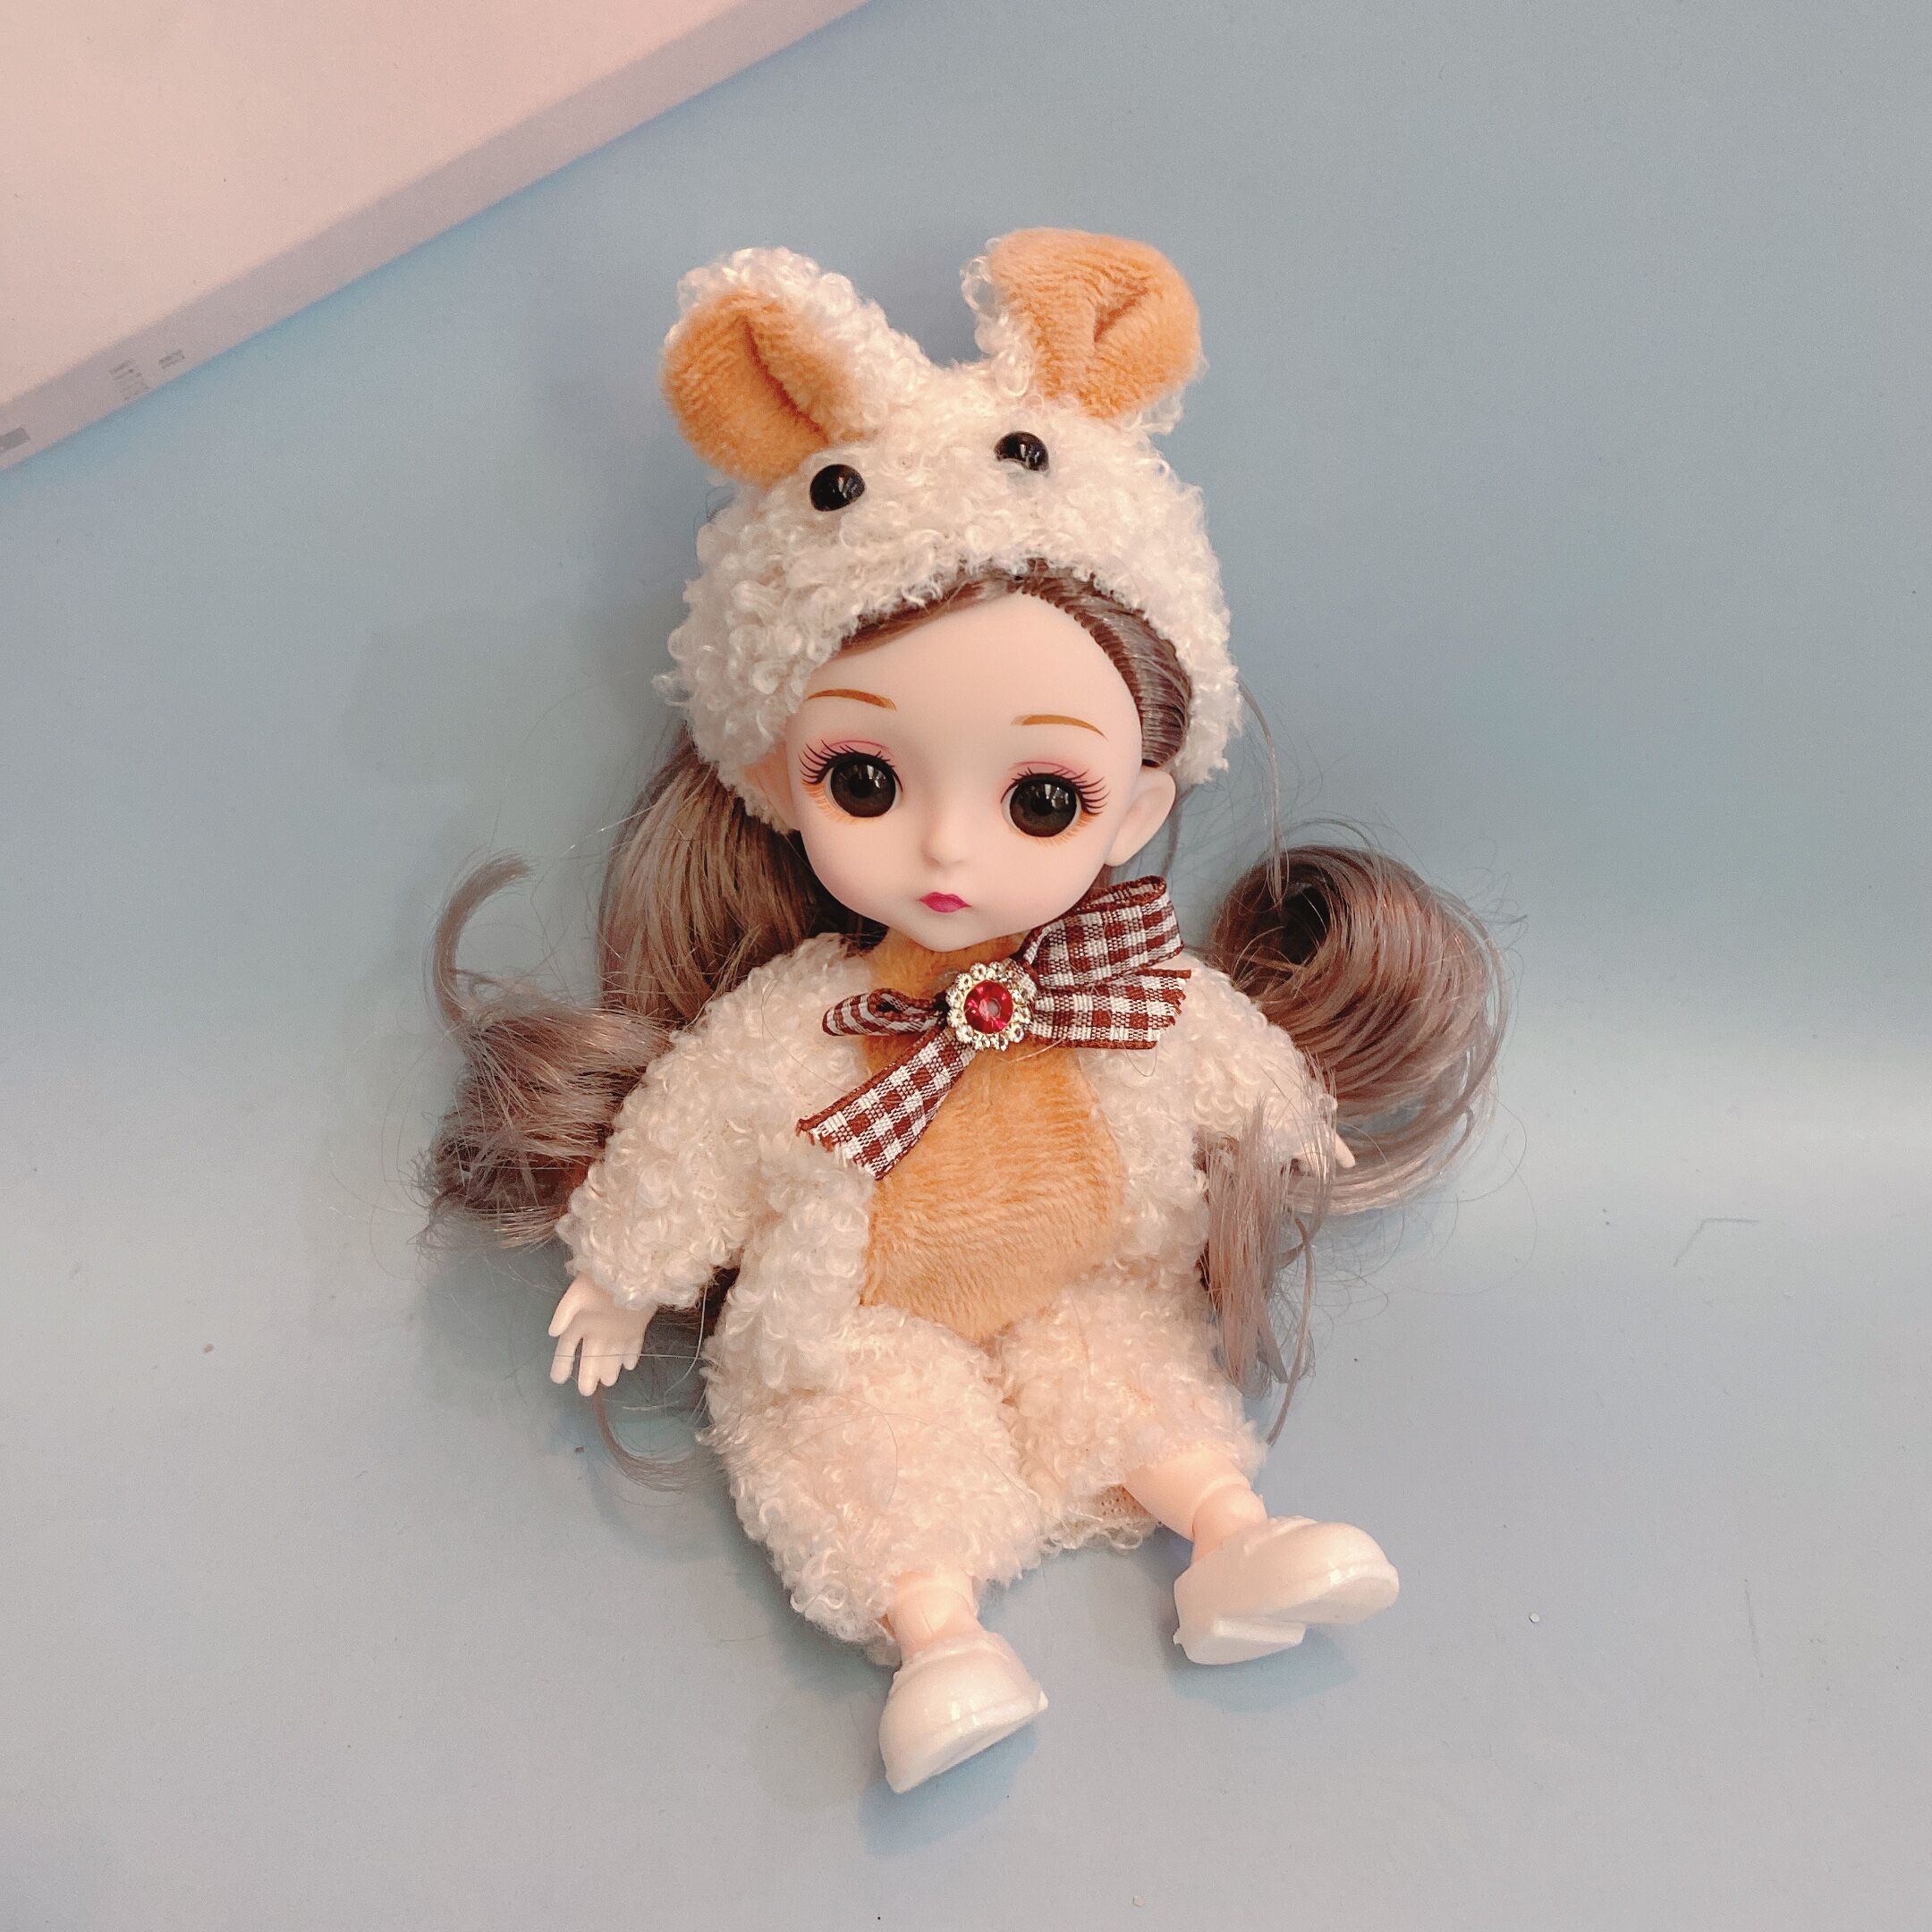 16厘米小熊娃娃爱莎公主女孩玩具迷你小号爱莎儿童仿真洋娃娃套装